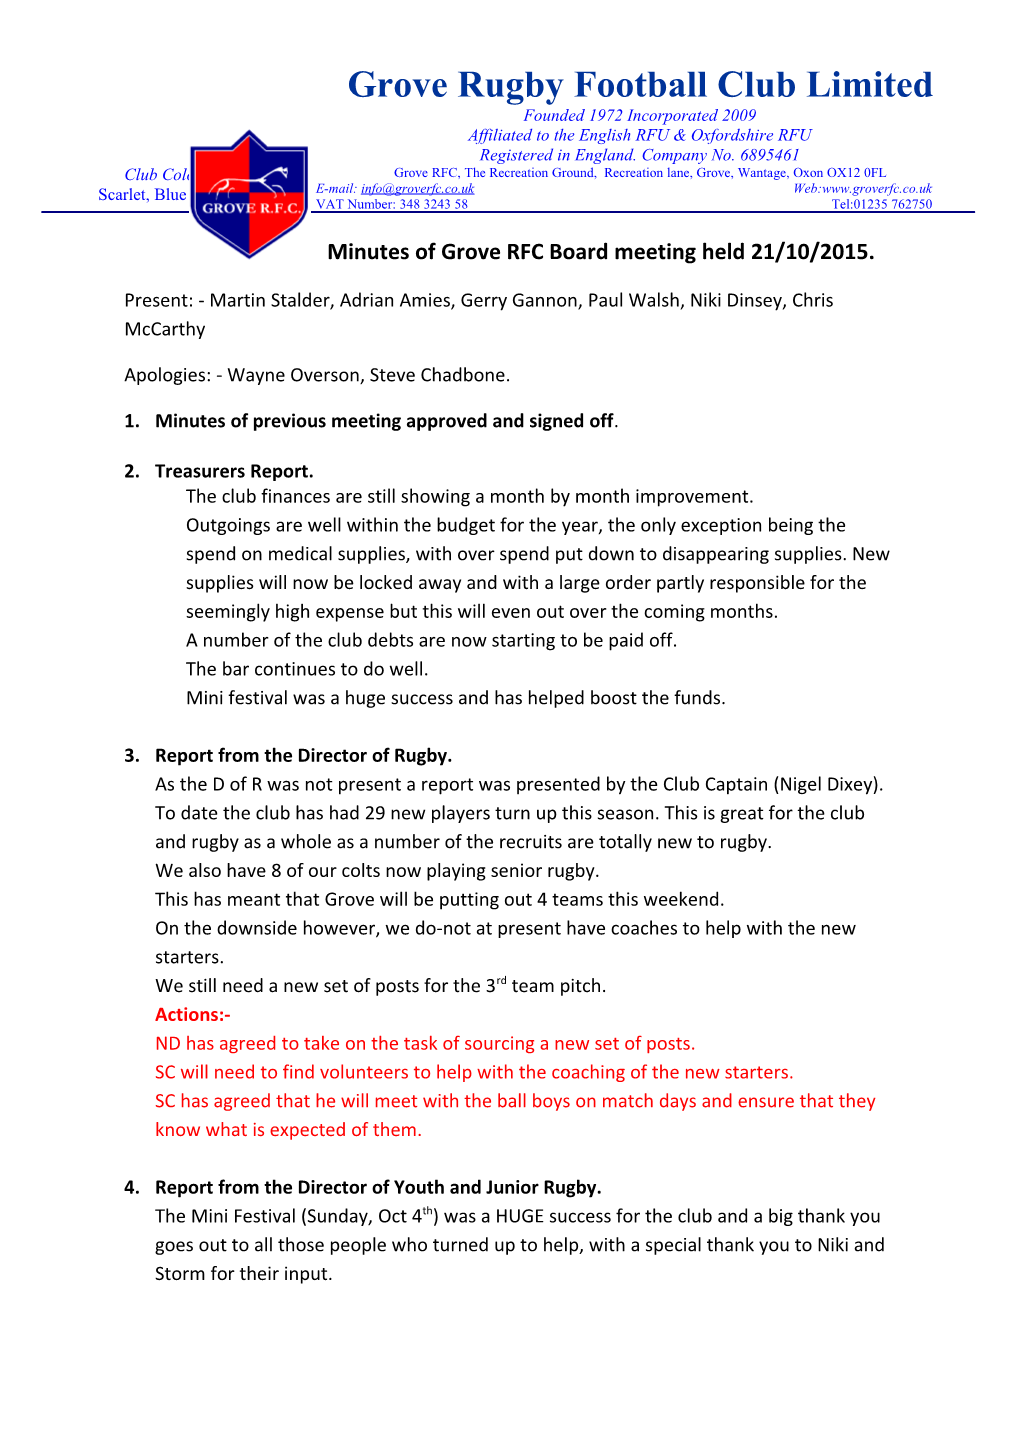 Minutes of Grove RFC Board Meeting Held 21/10/2015